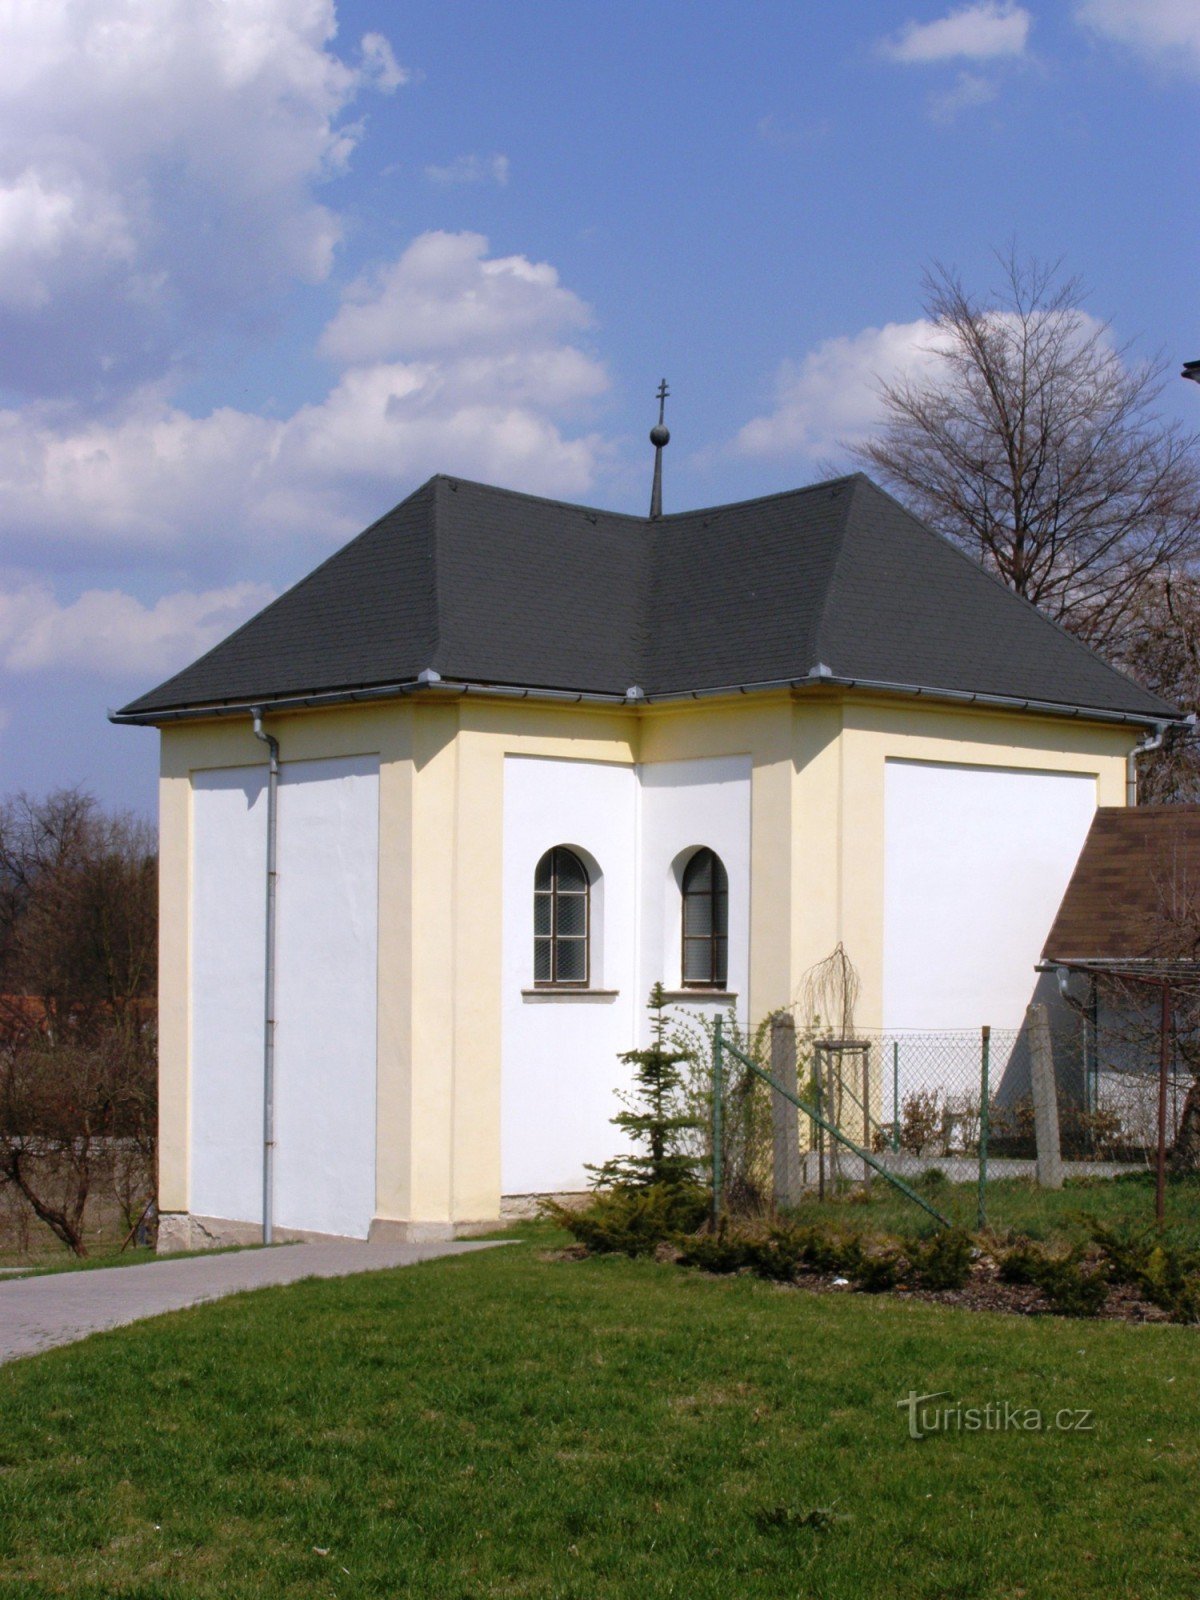 ザンベルク - 悲しみの聖母マリアの納骨堂